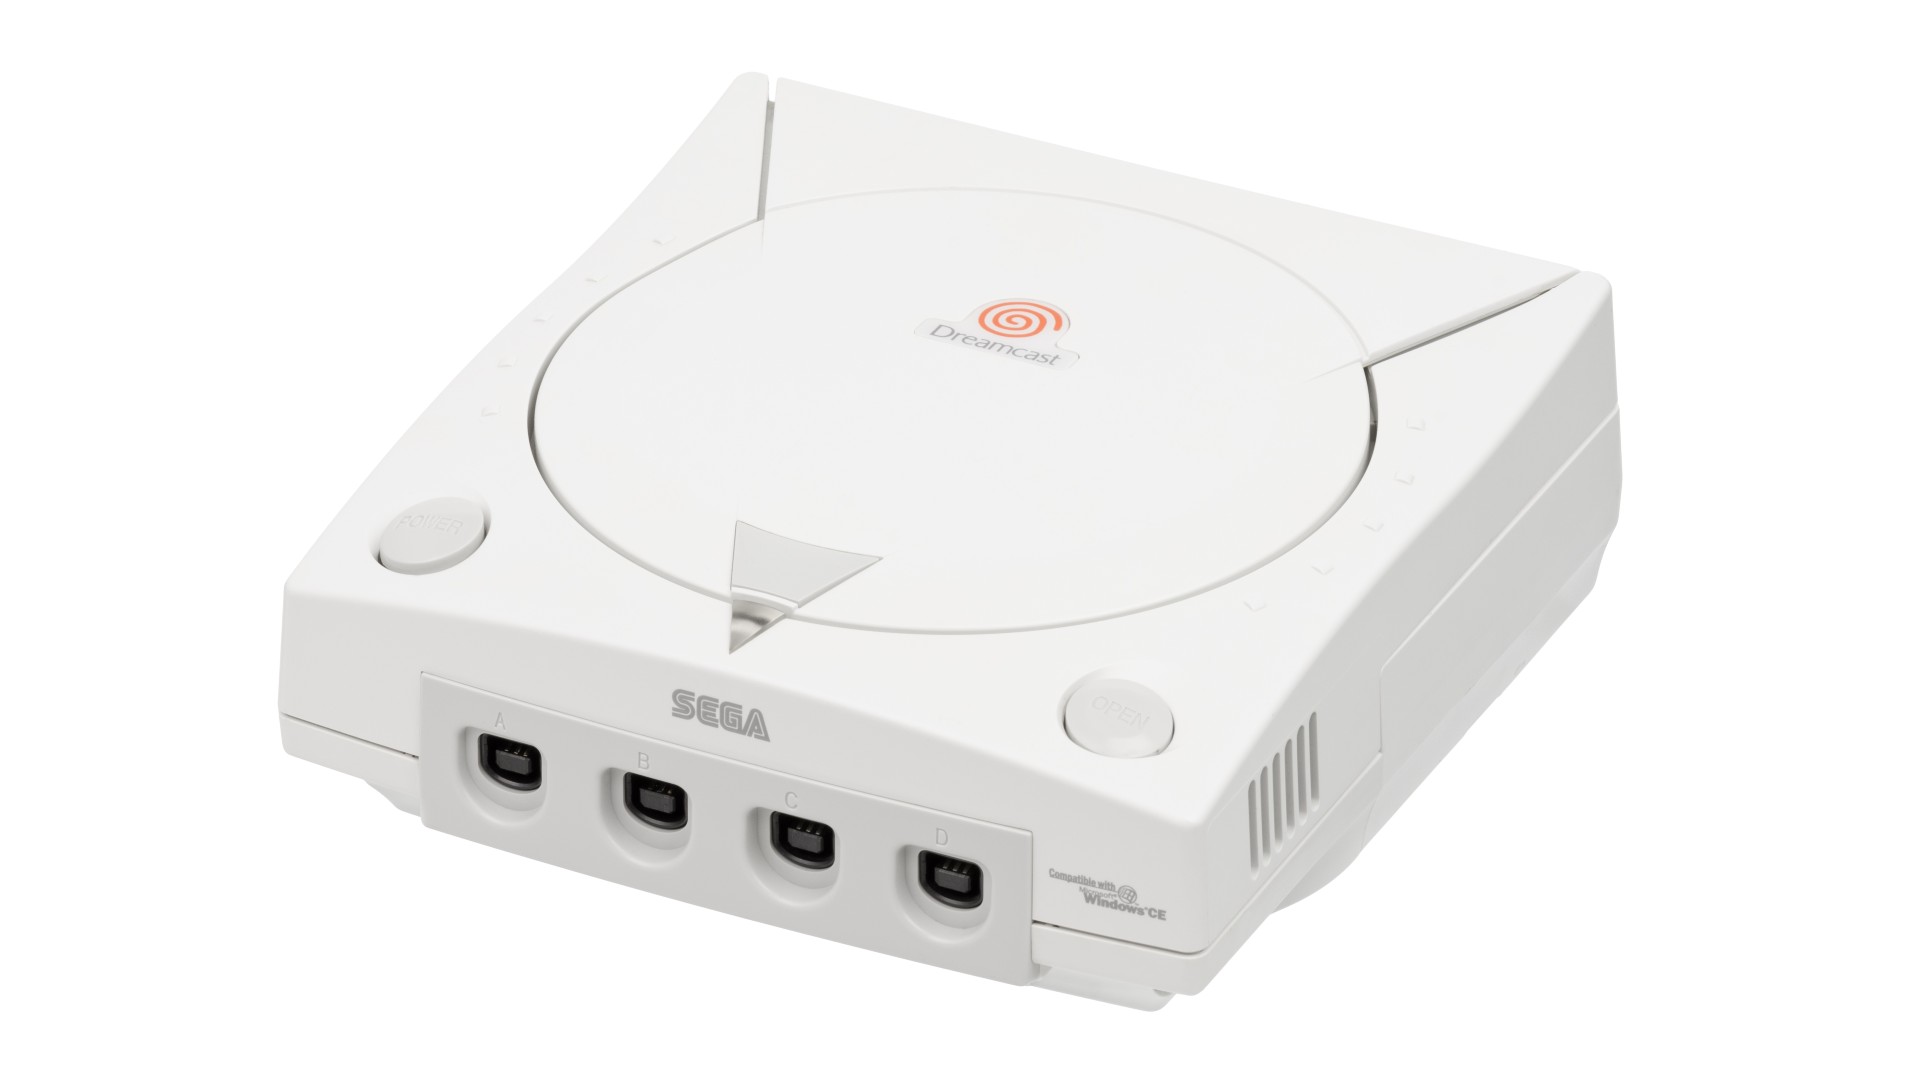 Sega Dreamcast Casing